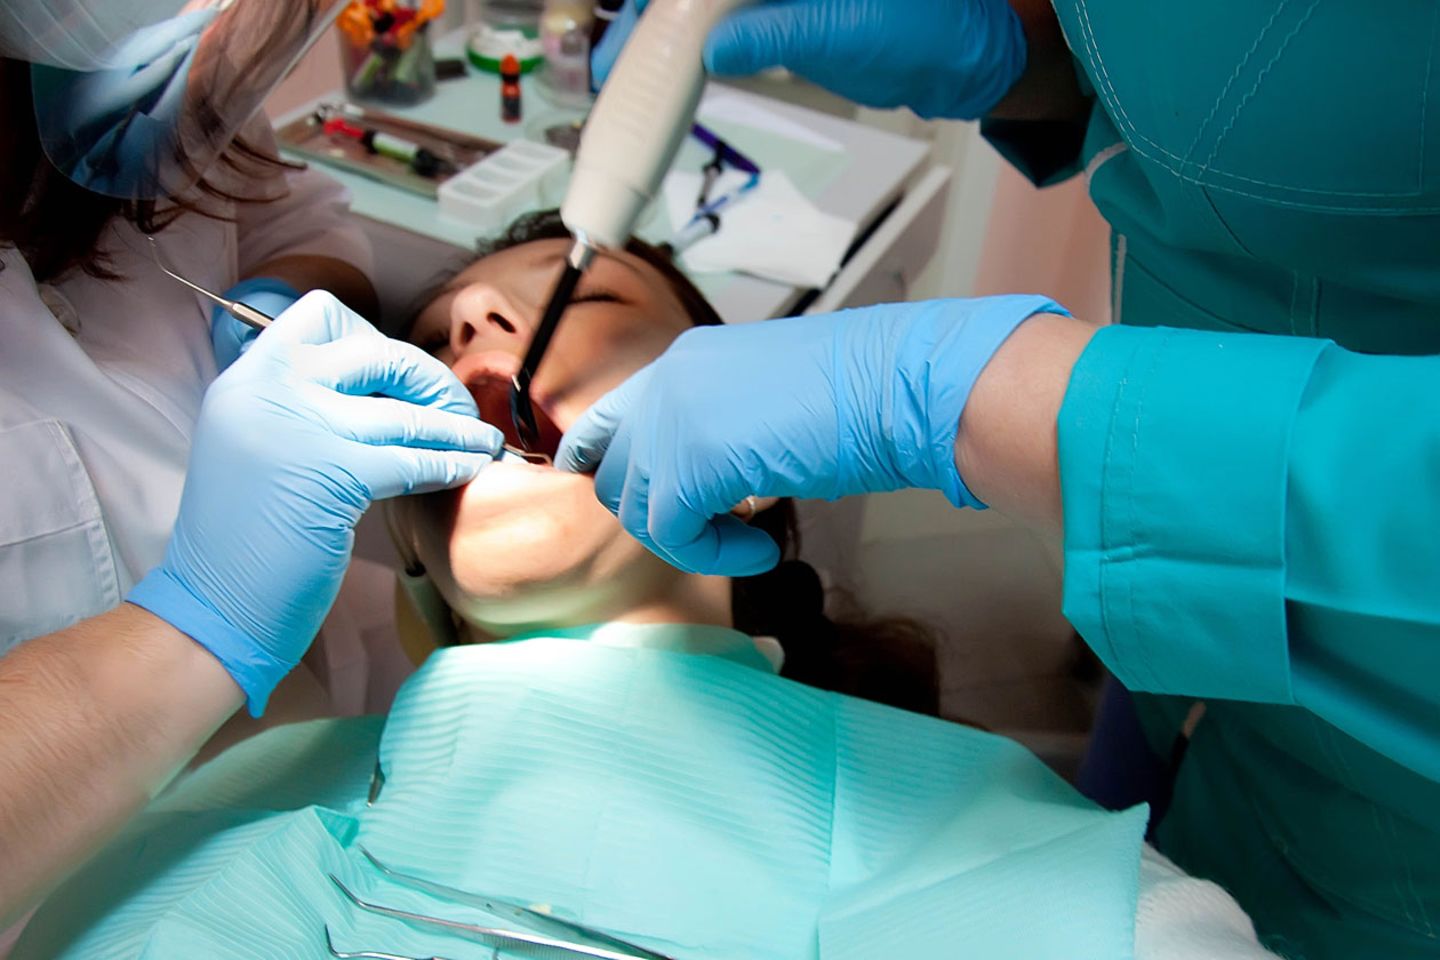 Entdeckt der Zahnarzt eine Zyste, rät er meist dazu, sie zu entfernen